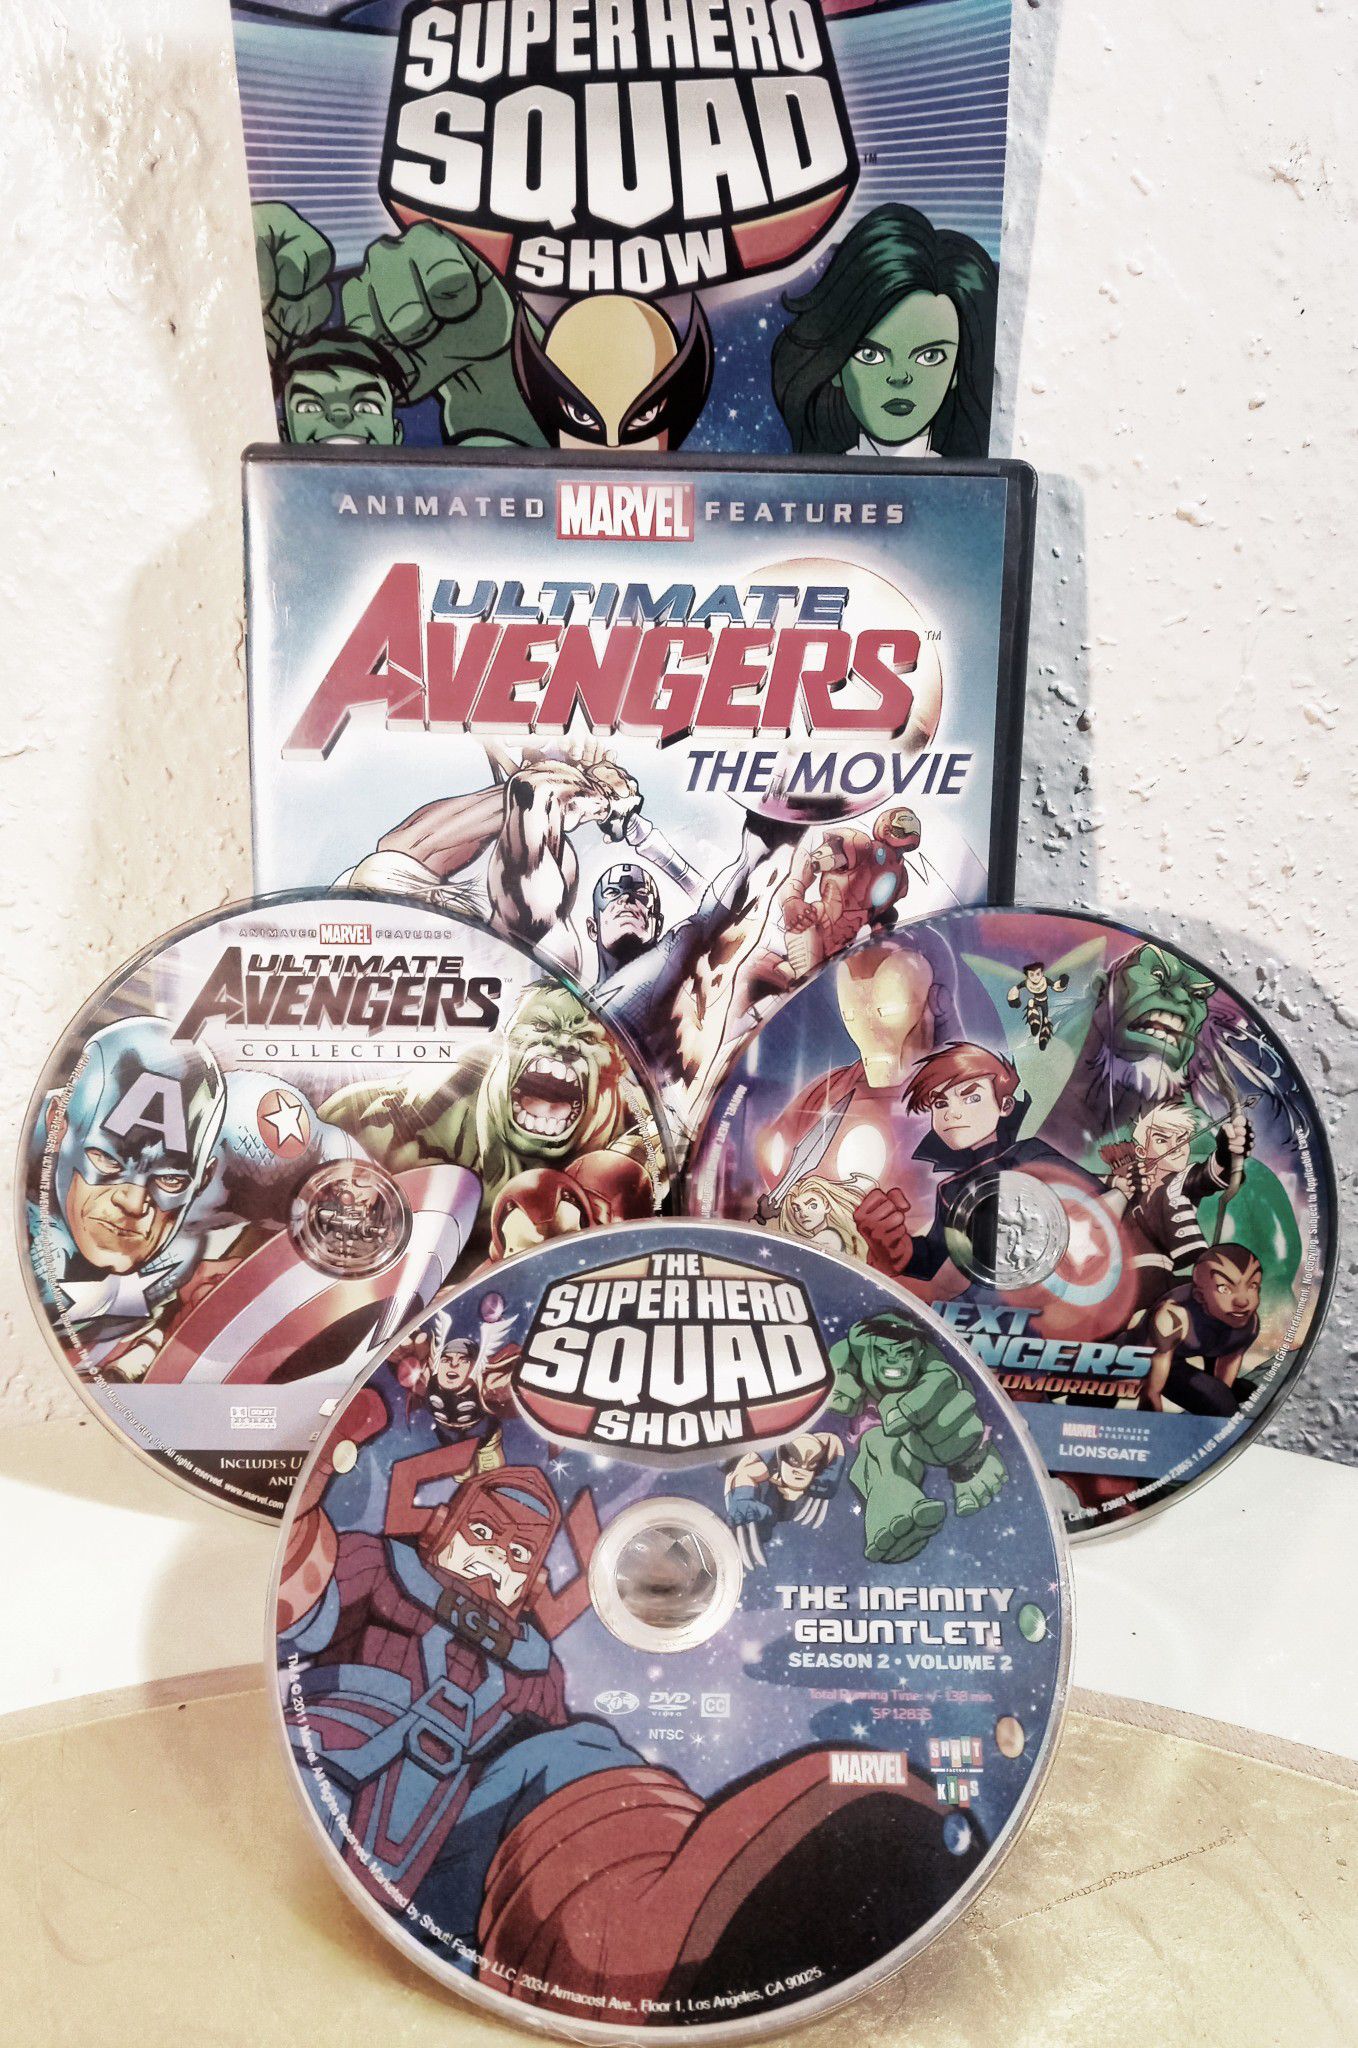 Avengers & super hero squad 3 dvds